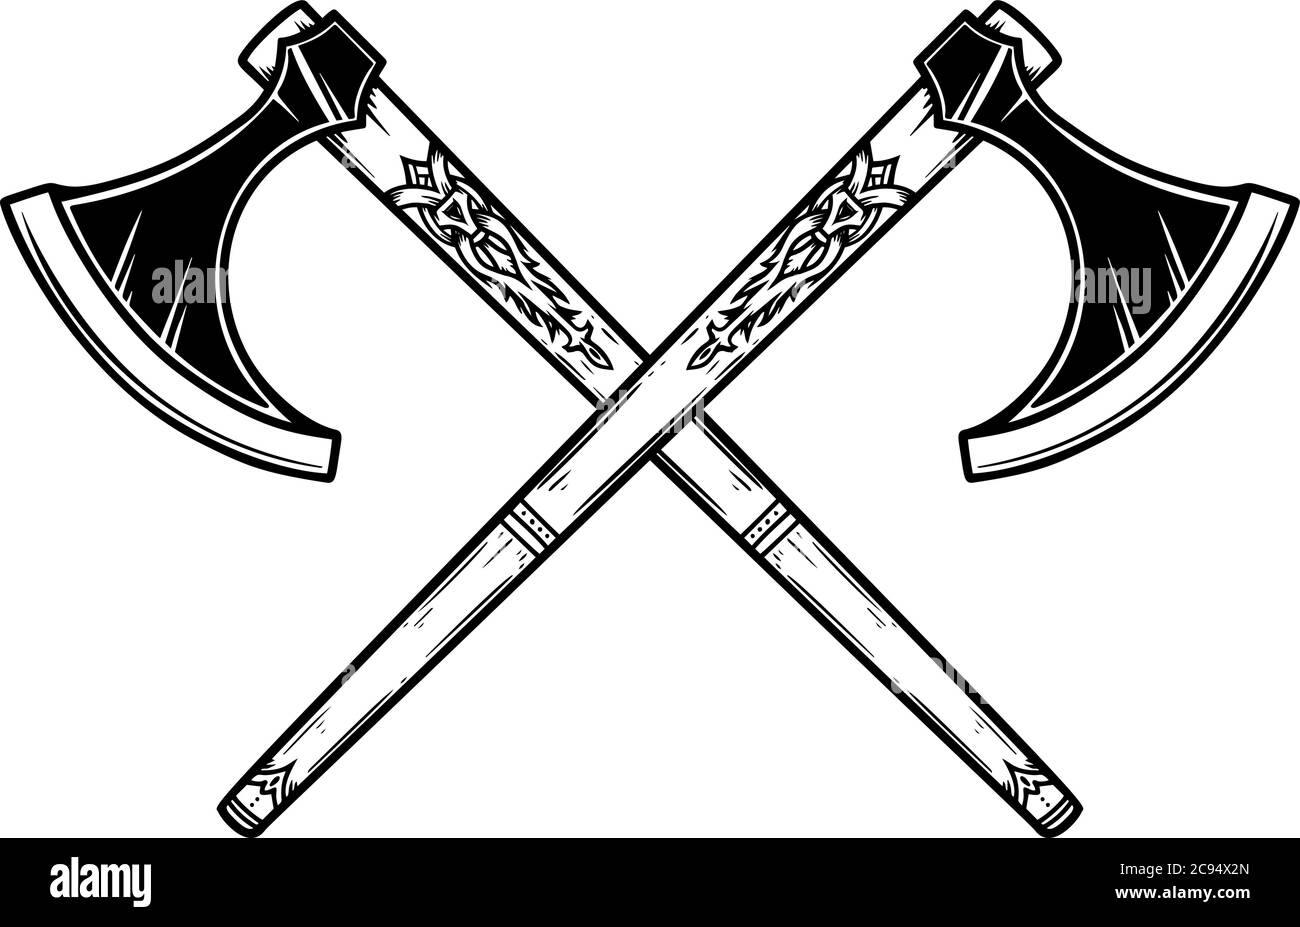 Illustration von zwei gekreuzten wikingeraxt in Gravurstil. Gestaltungselement für Logo, Emblem, Schild, Plakat, Karte, Banner. Vektorgrafik Stock Vektor